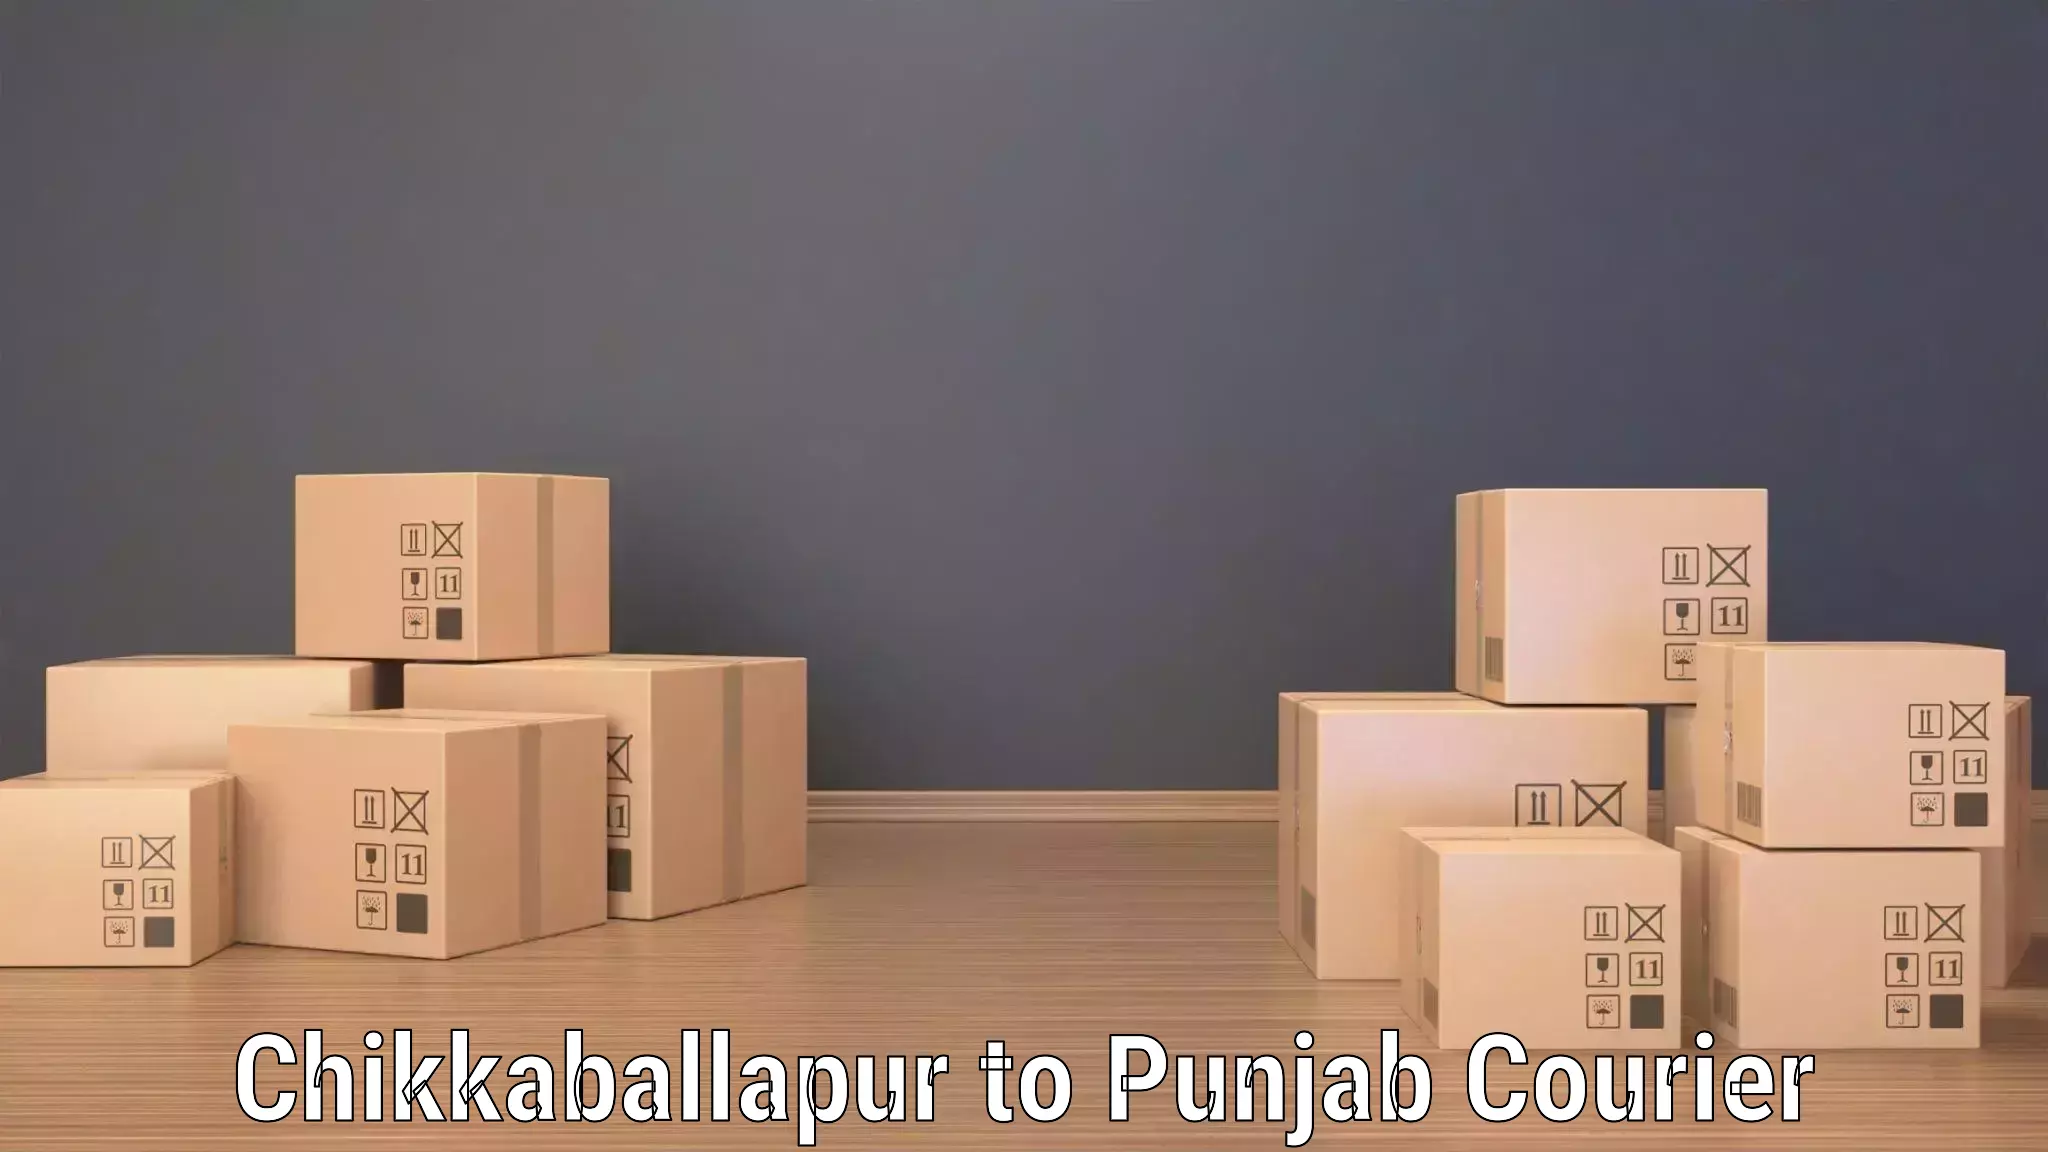 State-of-the-art courier technology in Chikkaballapur to Faridkot